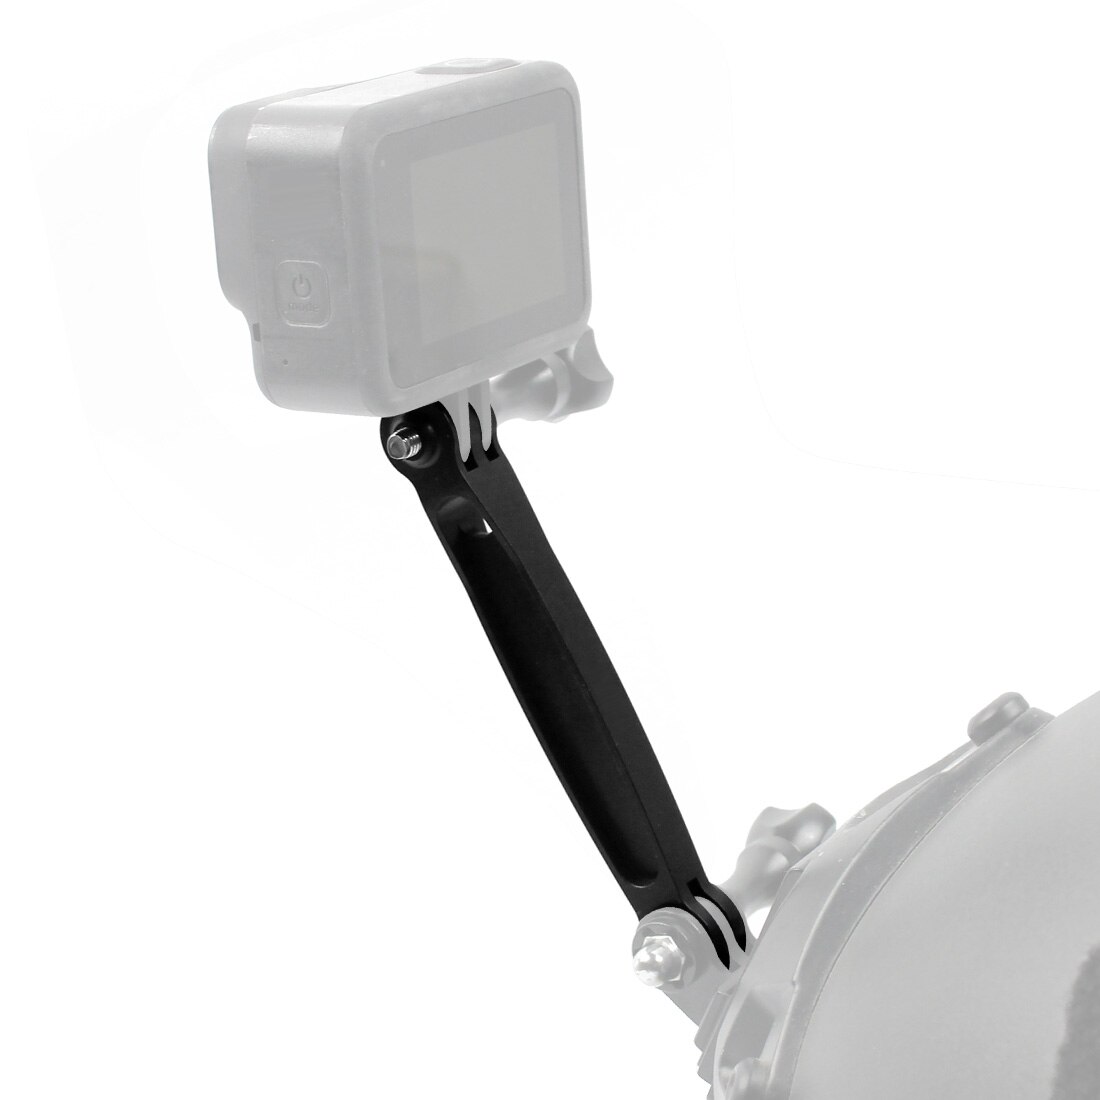 Bgning Aluminium Helm Extension Arm Mount Adapter Voor Gopro Hero 8 7 6 5 Voor Sjcam Voor Gitup Action camera